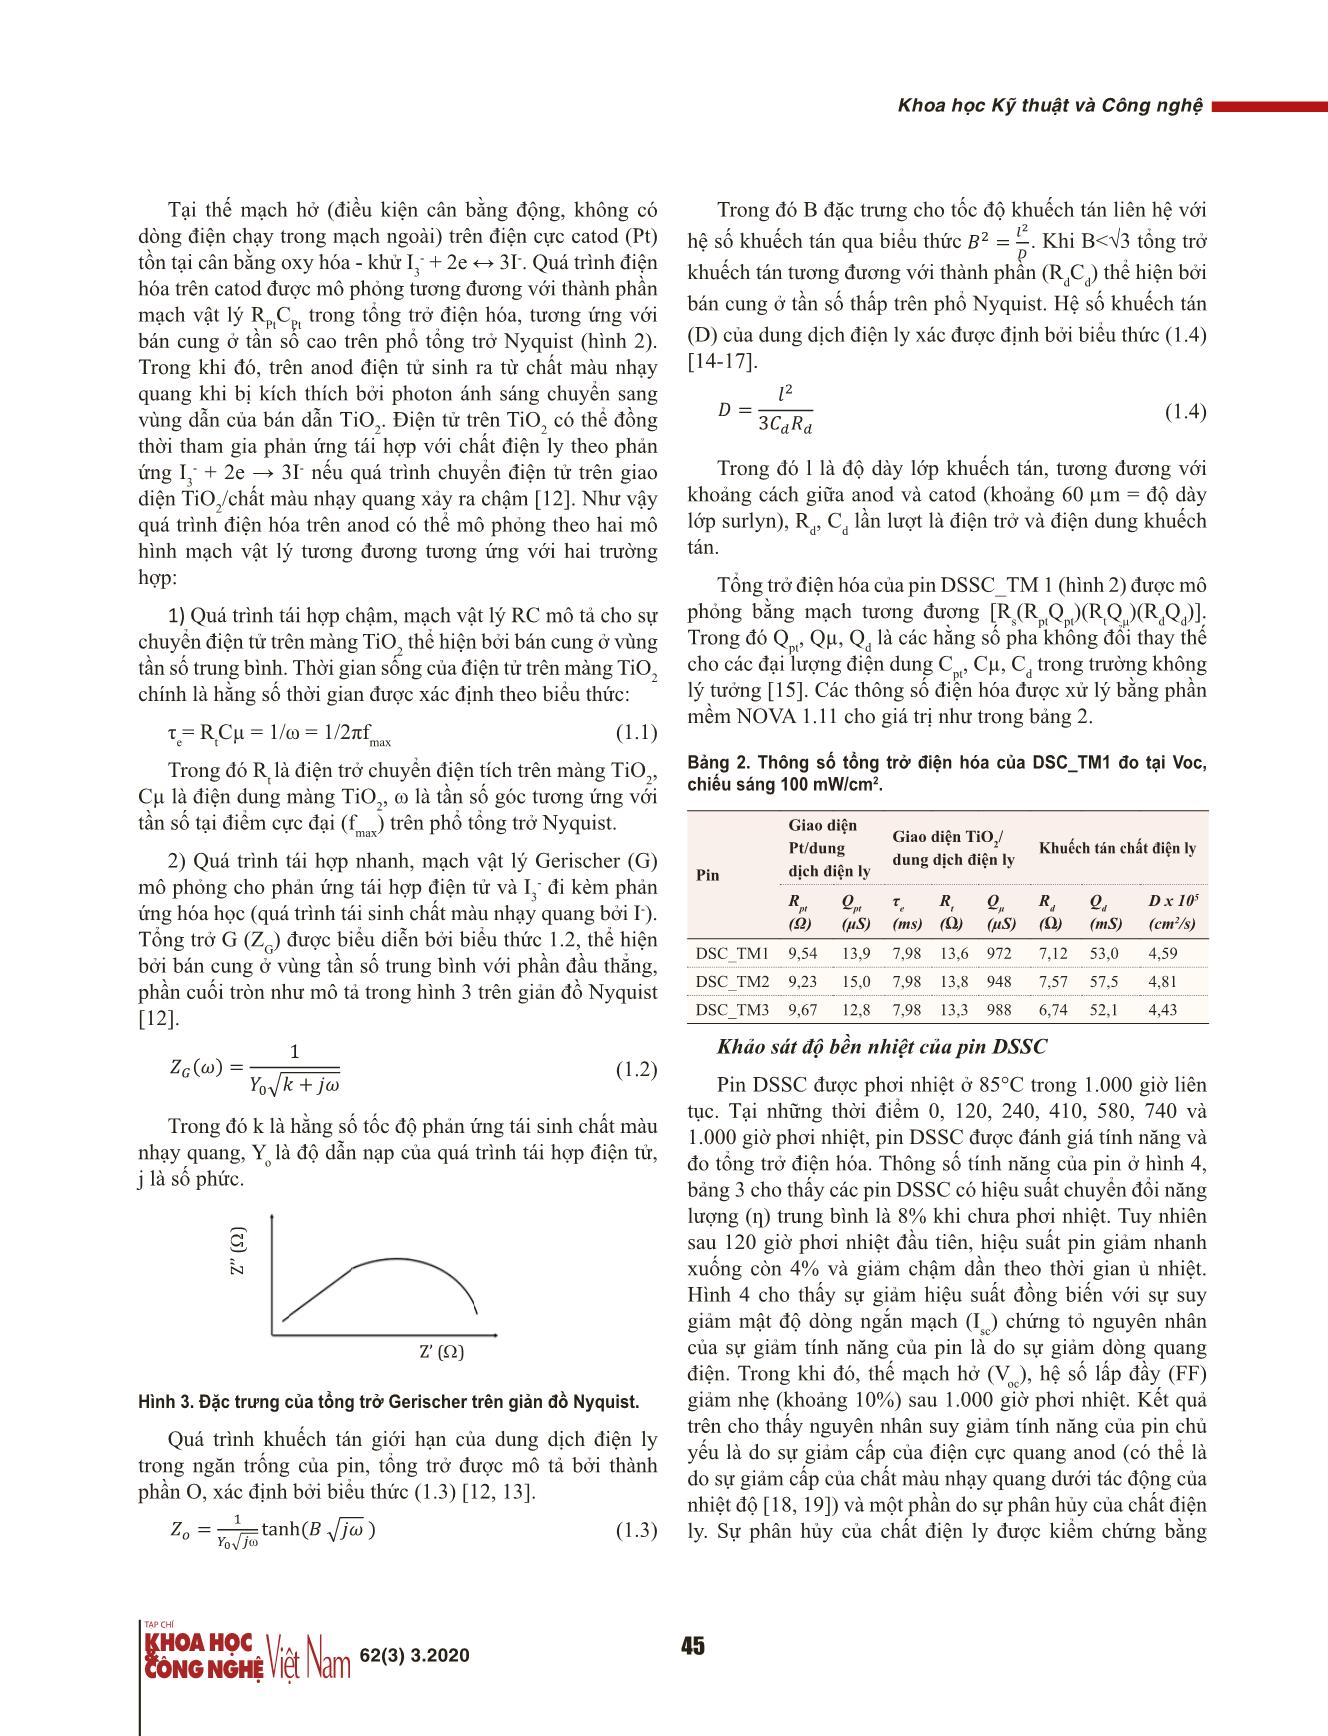 Chế tạo và khảo sát độ bền nhiệt của pin mặt trời chất màu nhạy quang trang 4